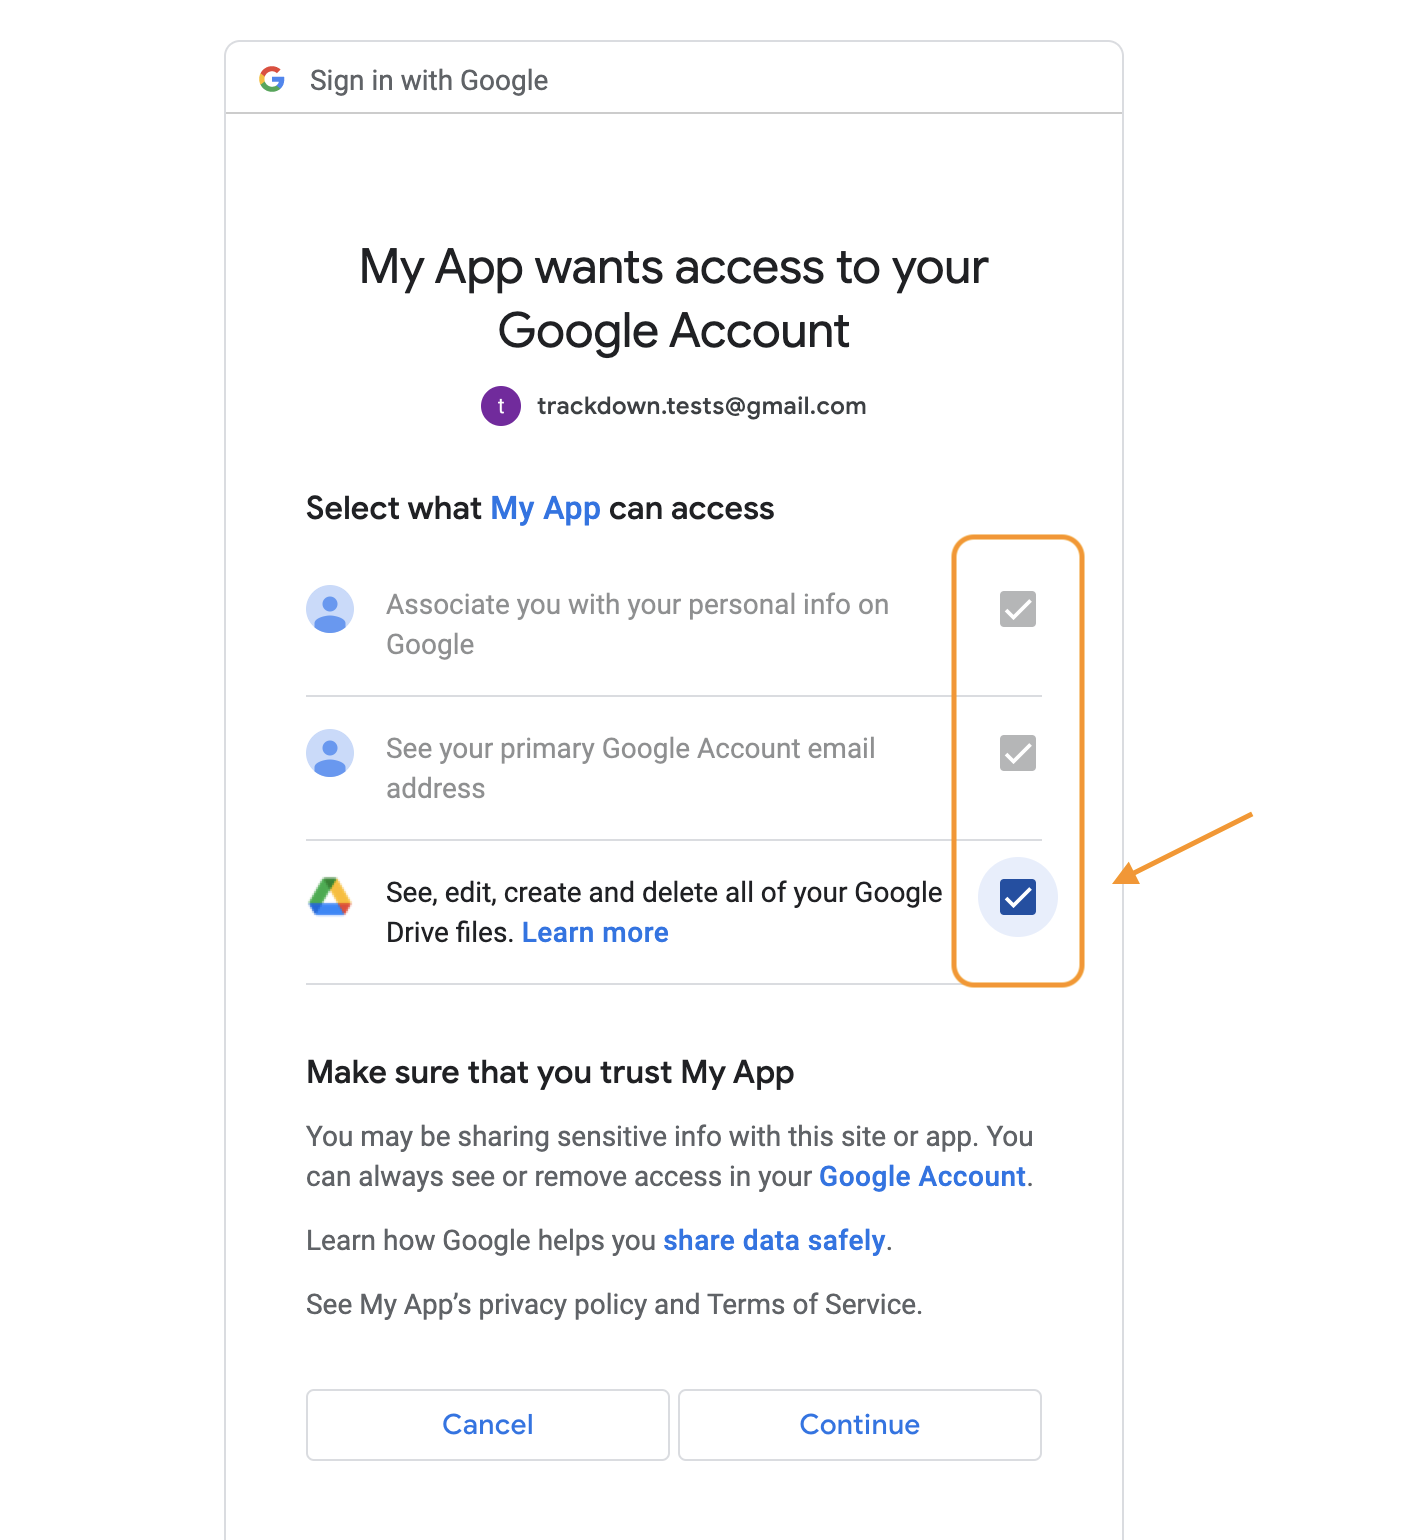 Google account access settings